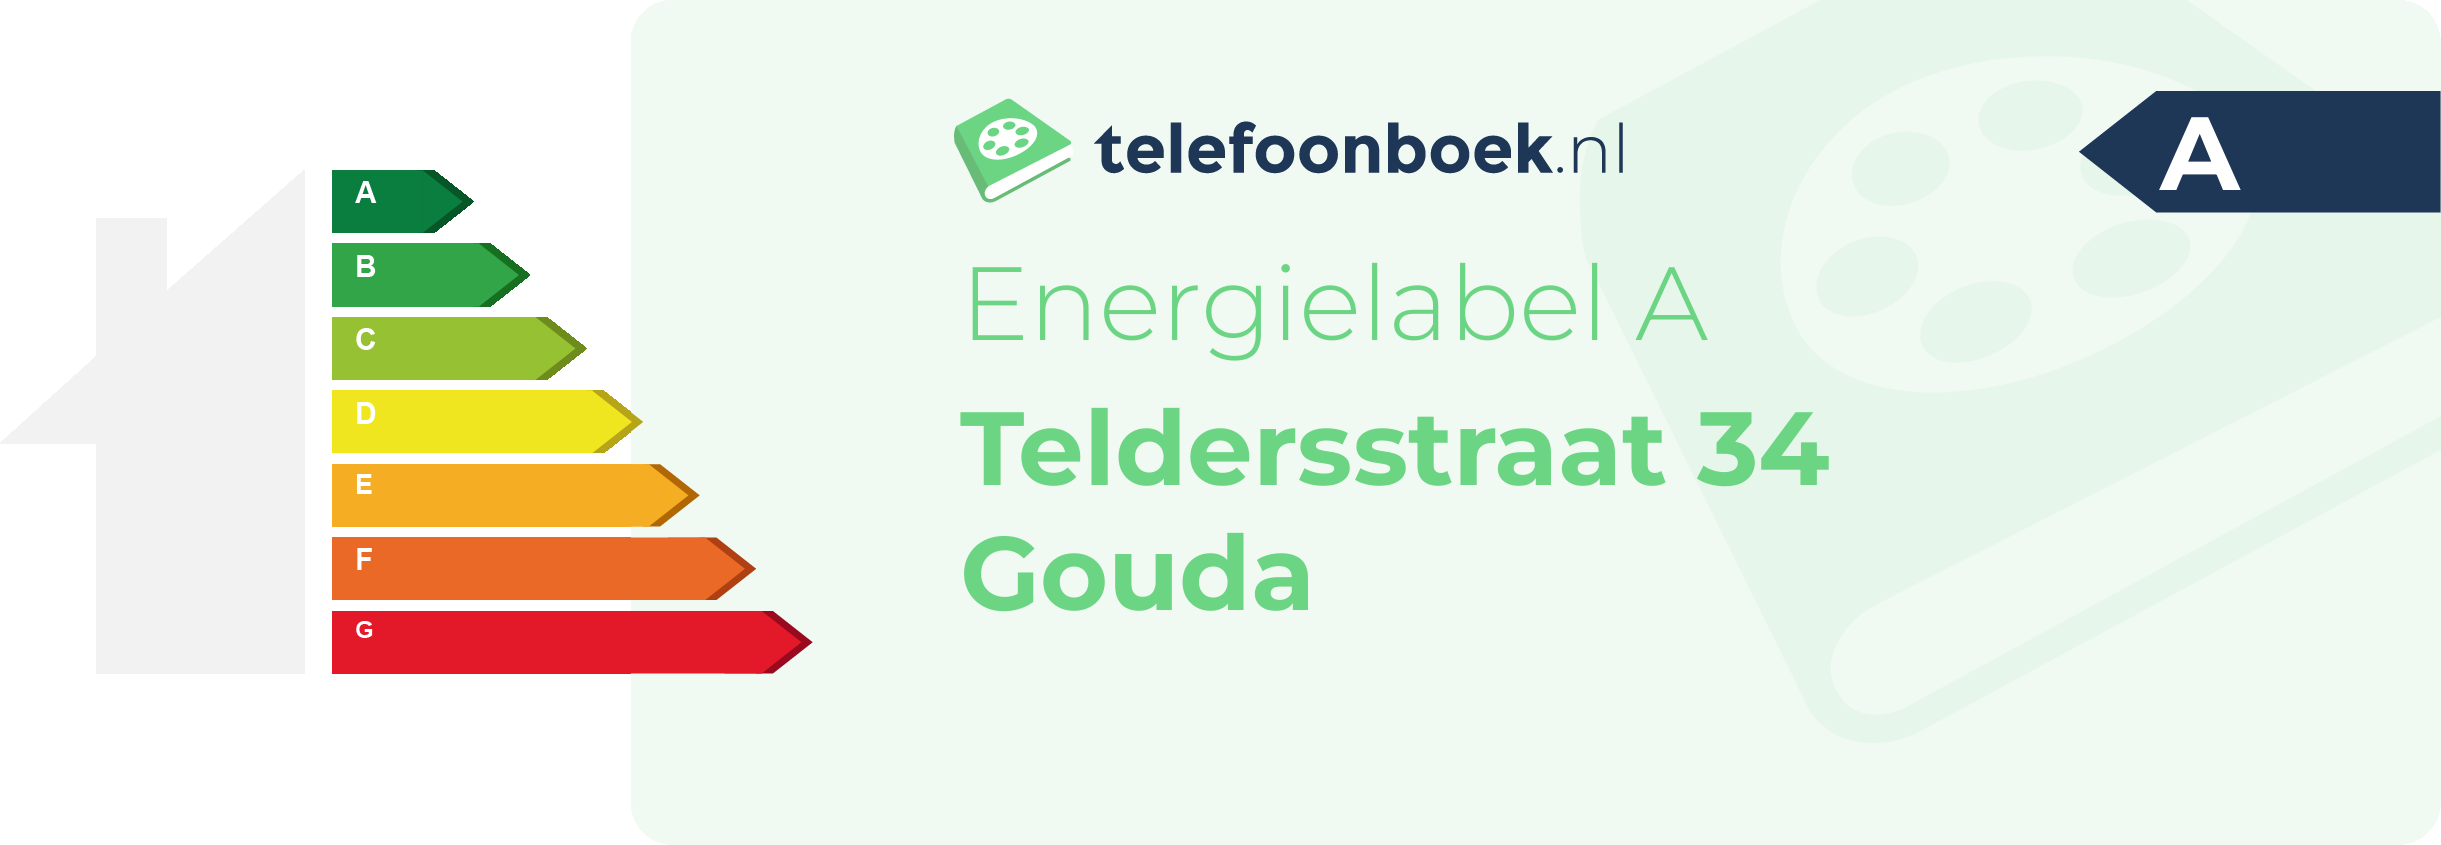 Energielabel Teldersstraat 34 Gouda